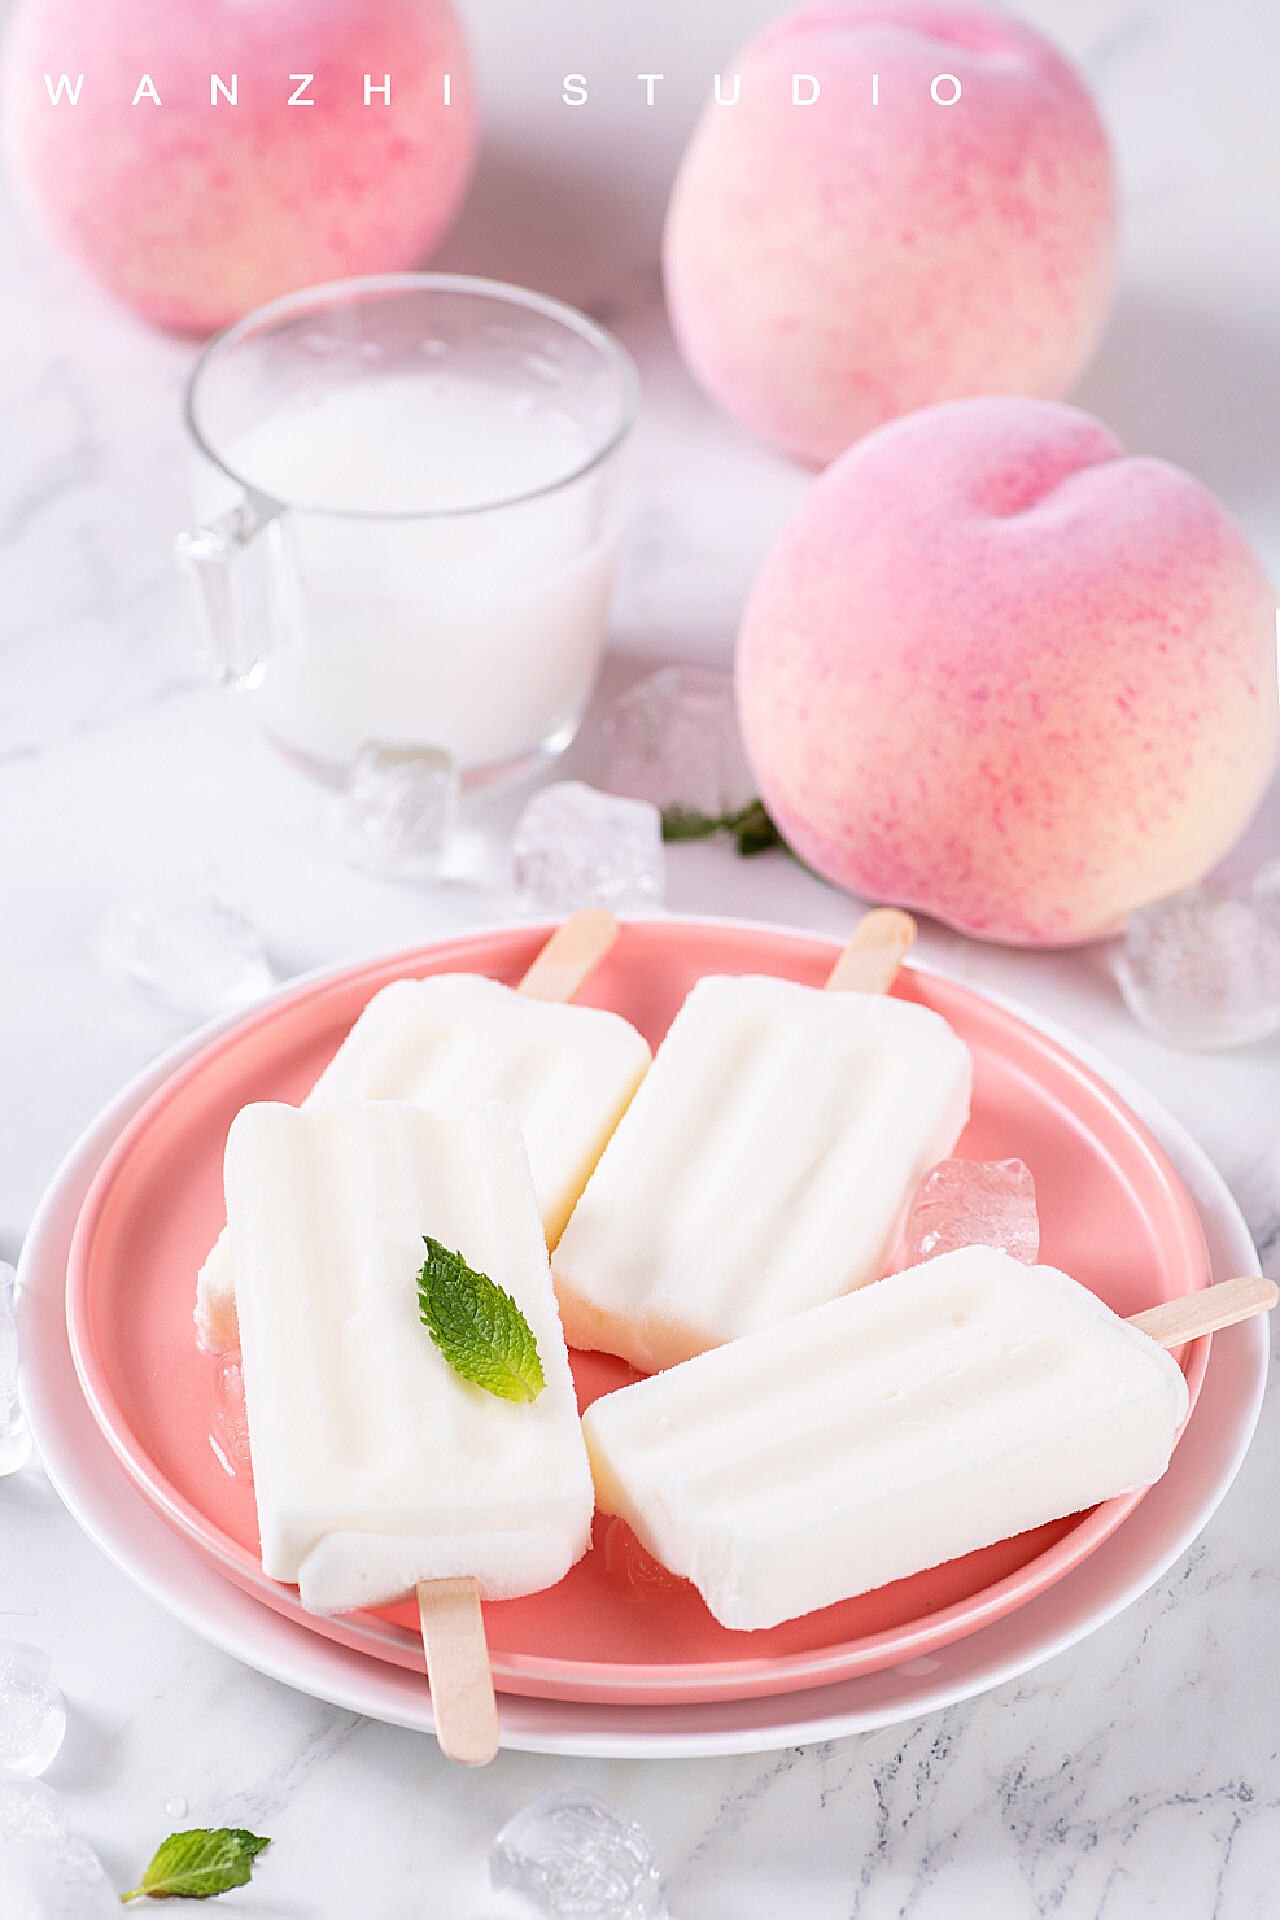 桃子酸奶用新鲜水果 库存图片. 图片 包括有 雏菊, 特写镜头, 早晨, 酸奶, 食物, 玻璃, 新鲜, 牛奶 - 42936559